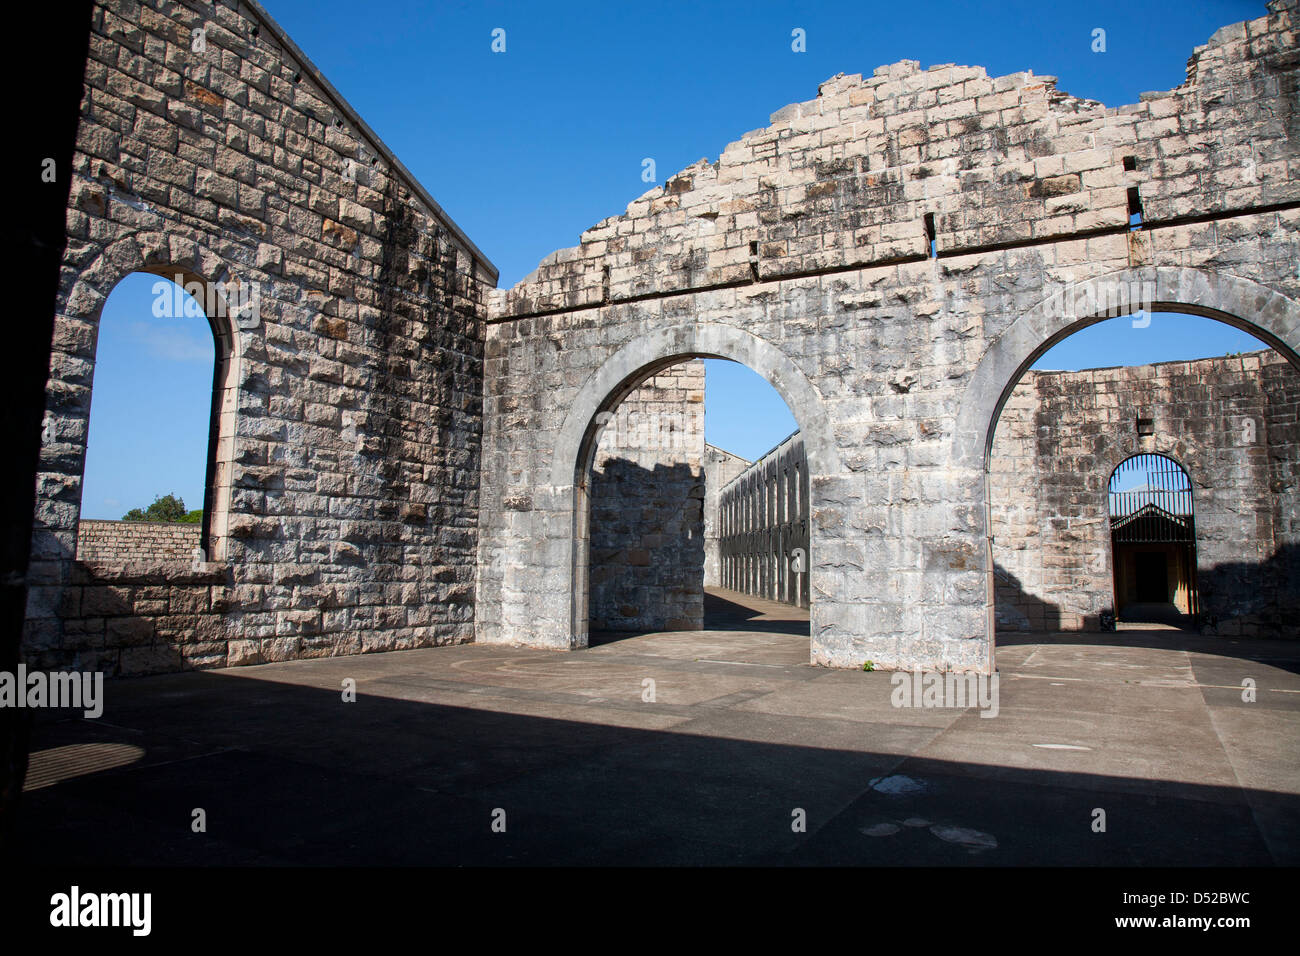 Trial Bay Gaol - Arakoon Parco Nazionale vicino a sud ovest di Rock NSW Australia Foto Stock